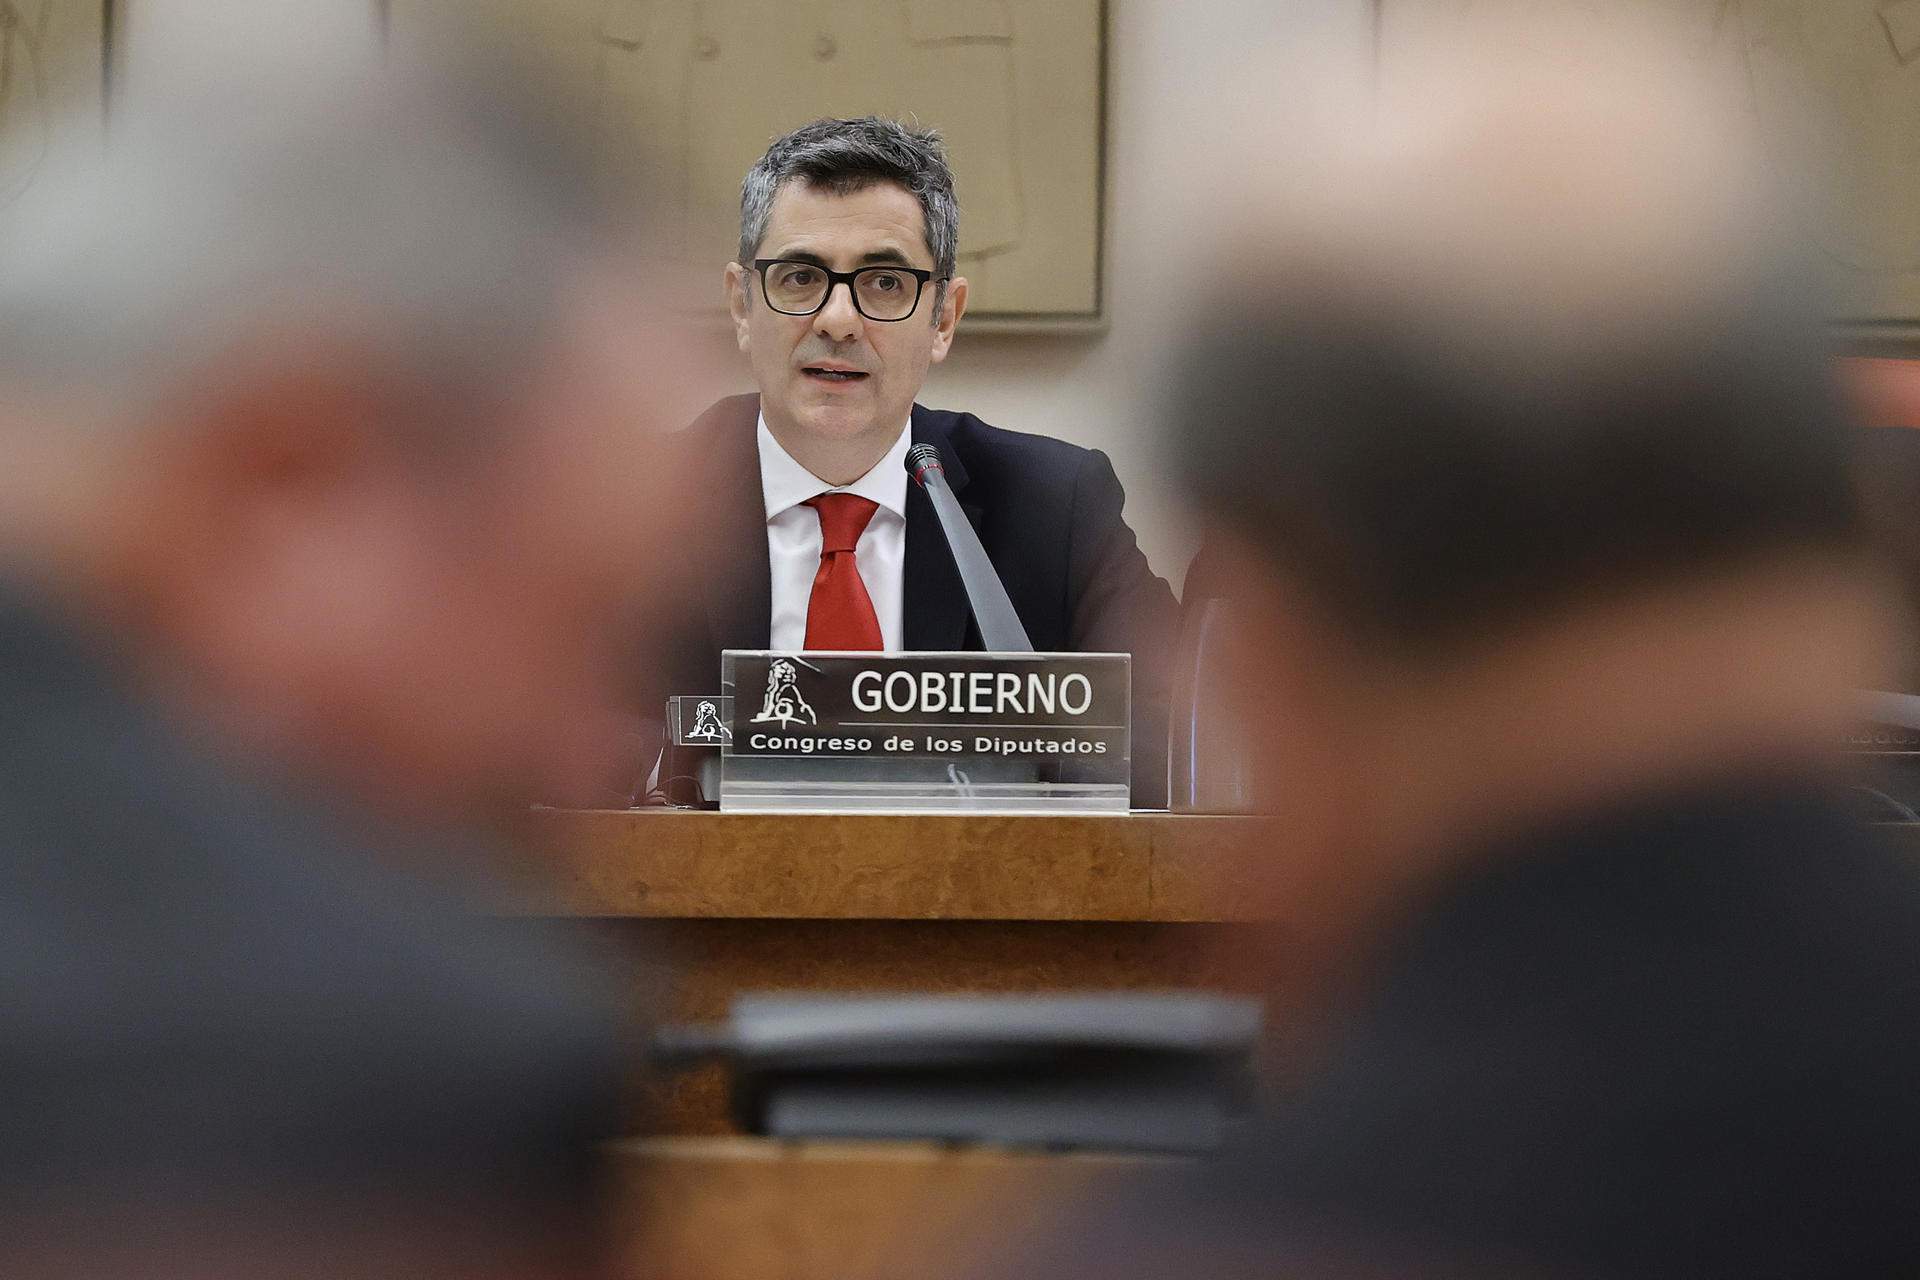 La Moncloa saca pecho con la Fiscalía del Supremo sobre Puigdemont: "No hubo terrorismo"